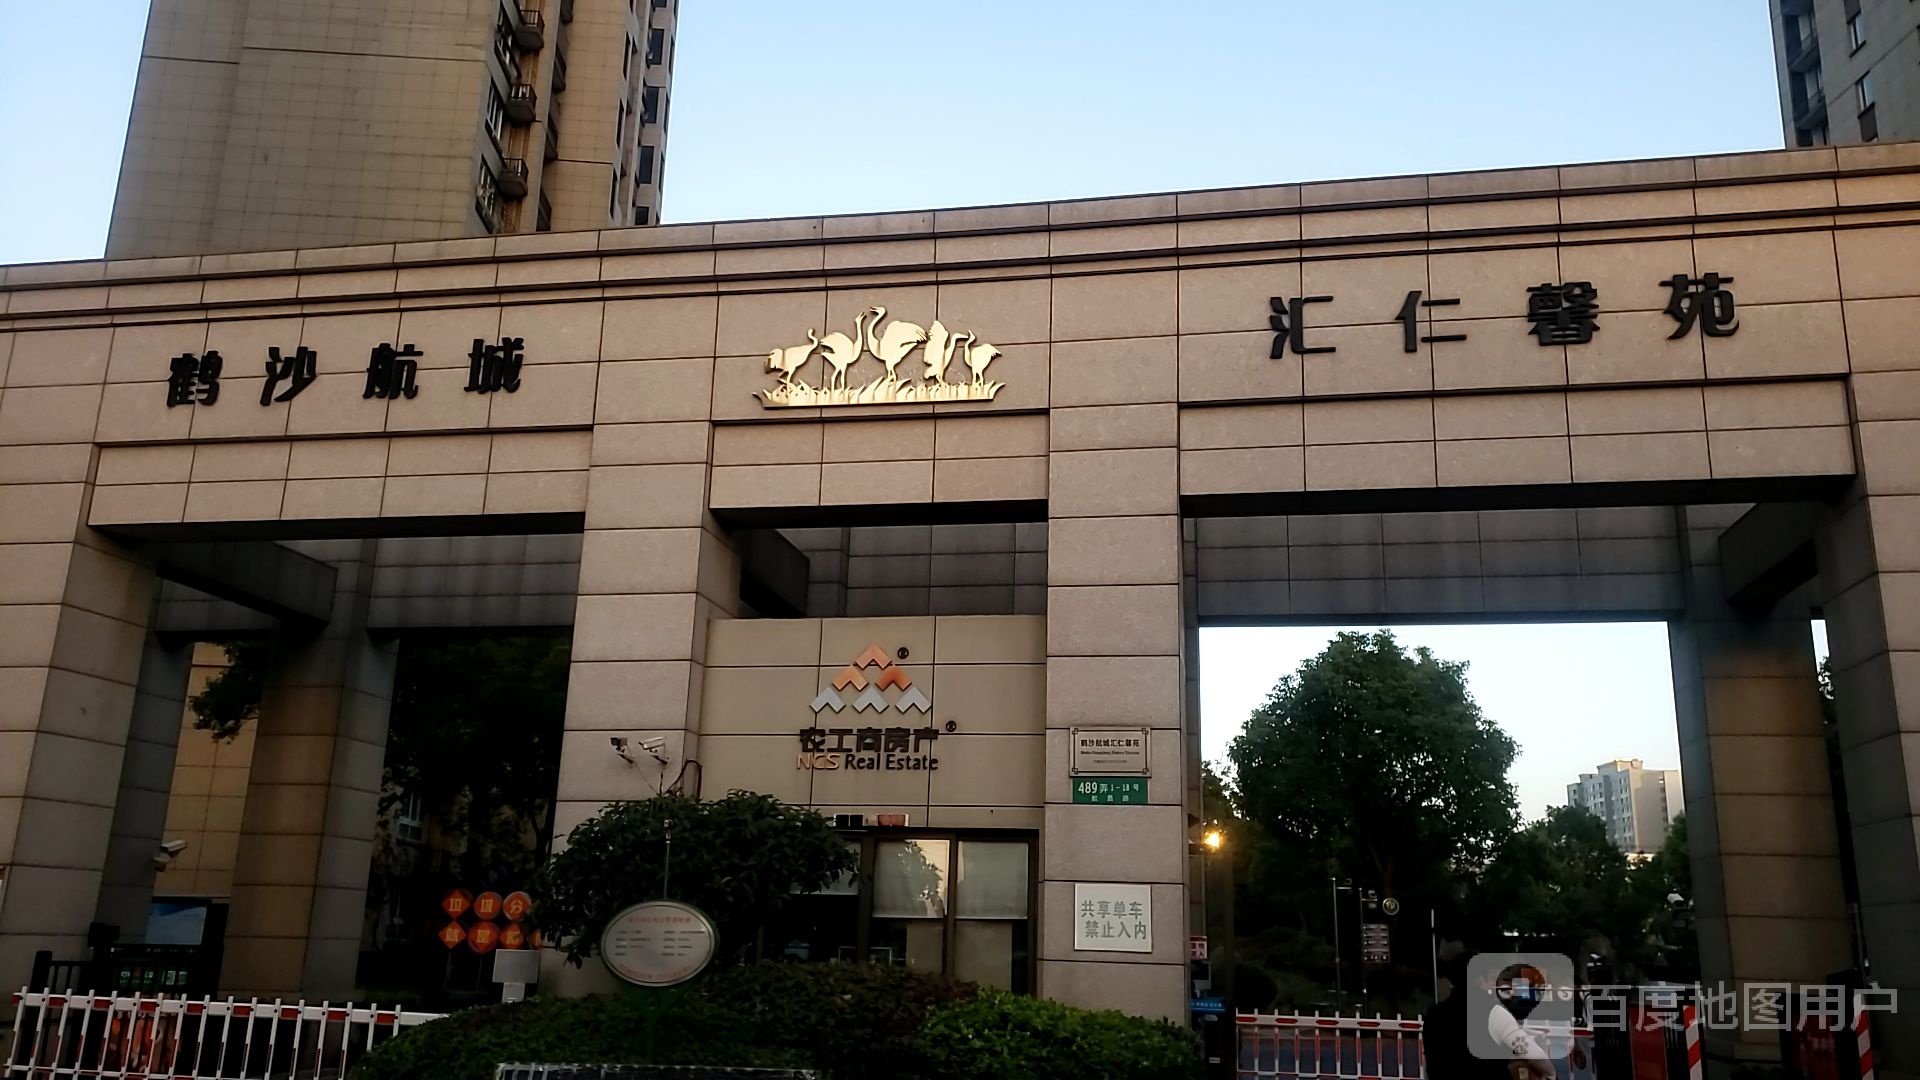 上海市浦东新区航昌路与鹤波路交叉路口往北约140米